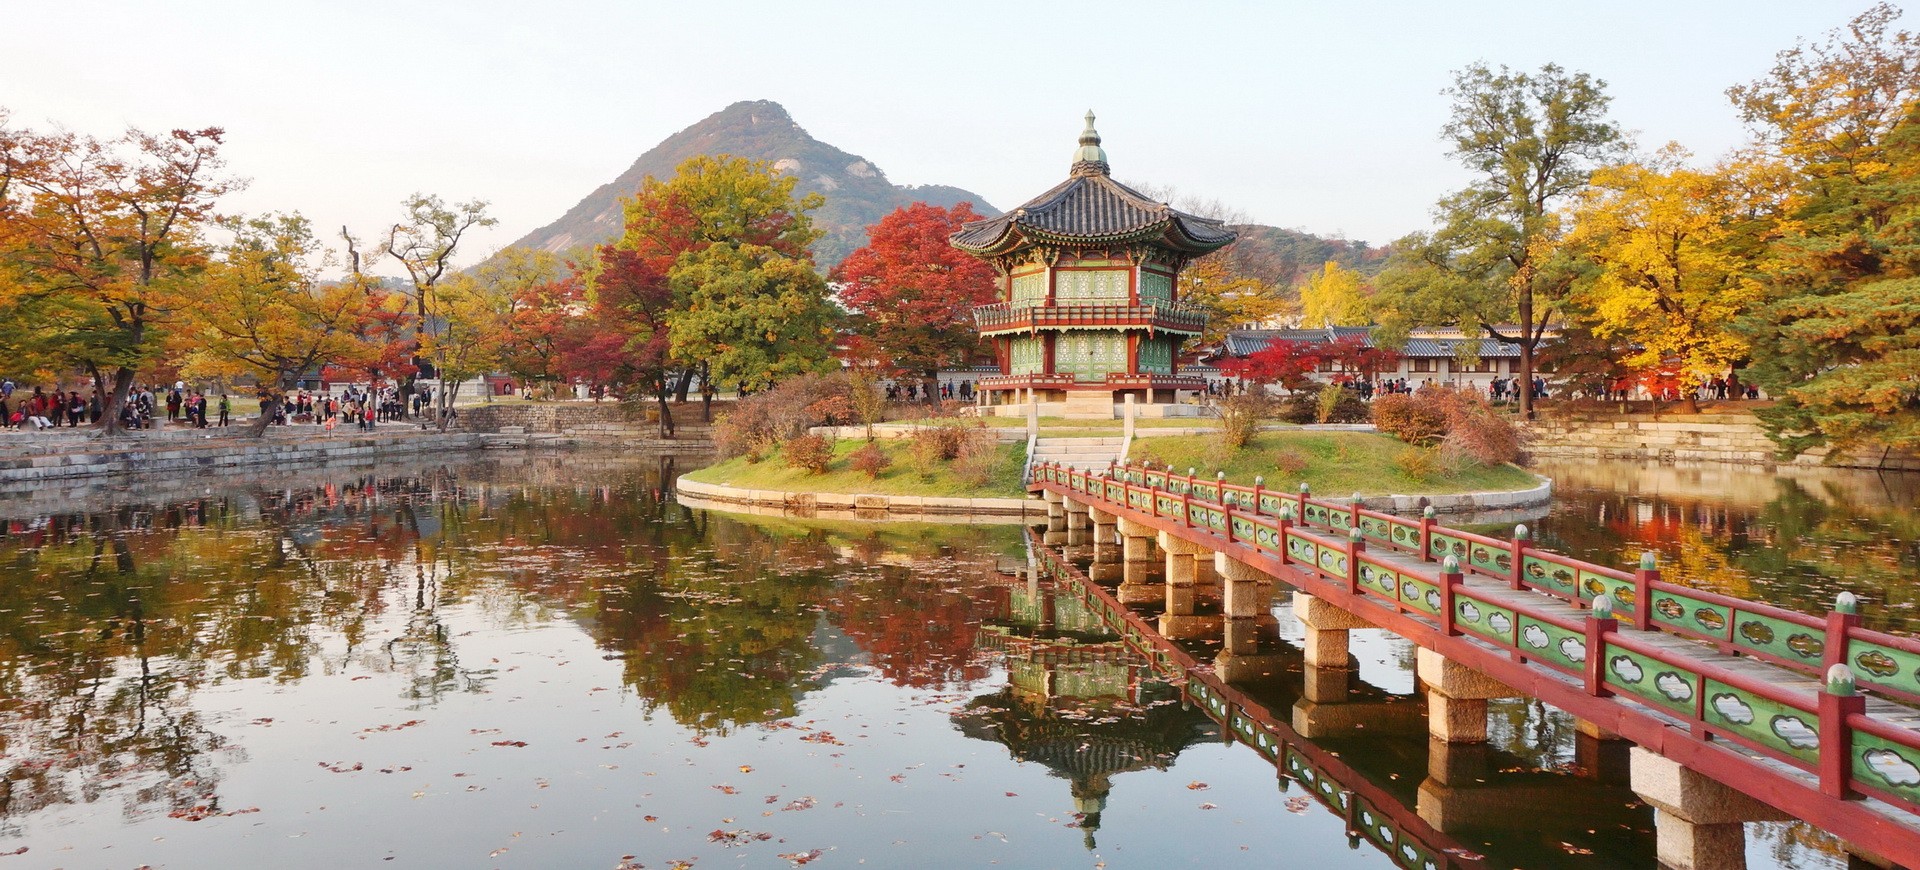 Circuits groupes pas chers en Corée du Sud et séjour àn Séoul - Voyage